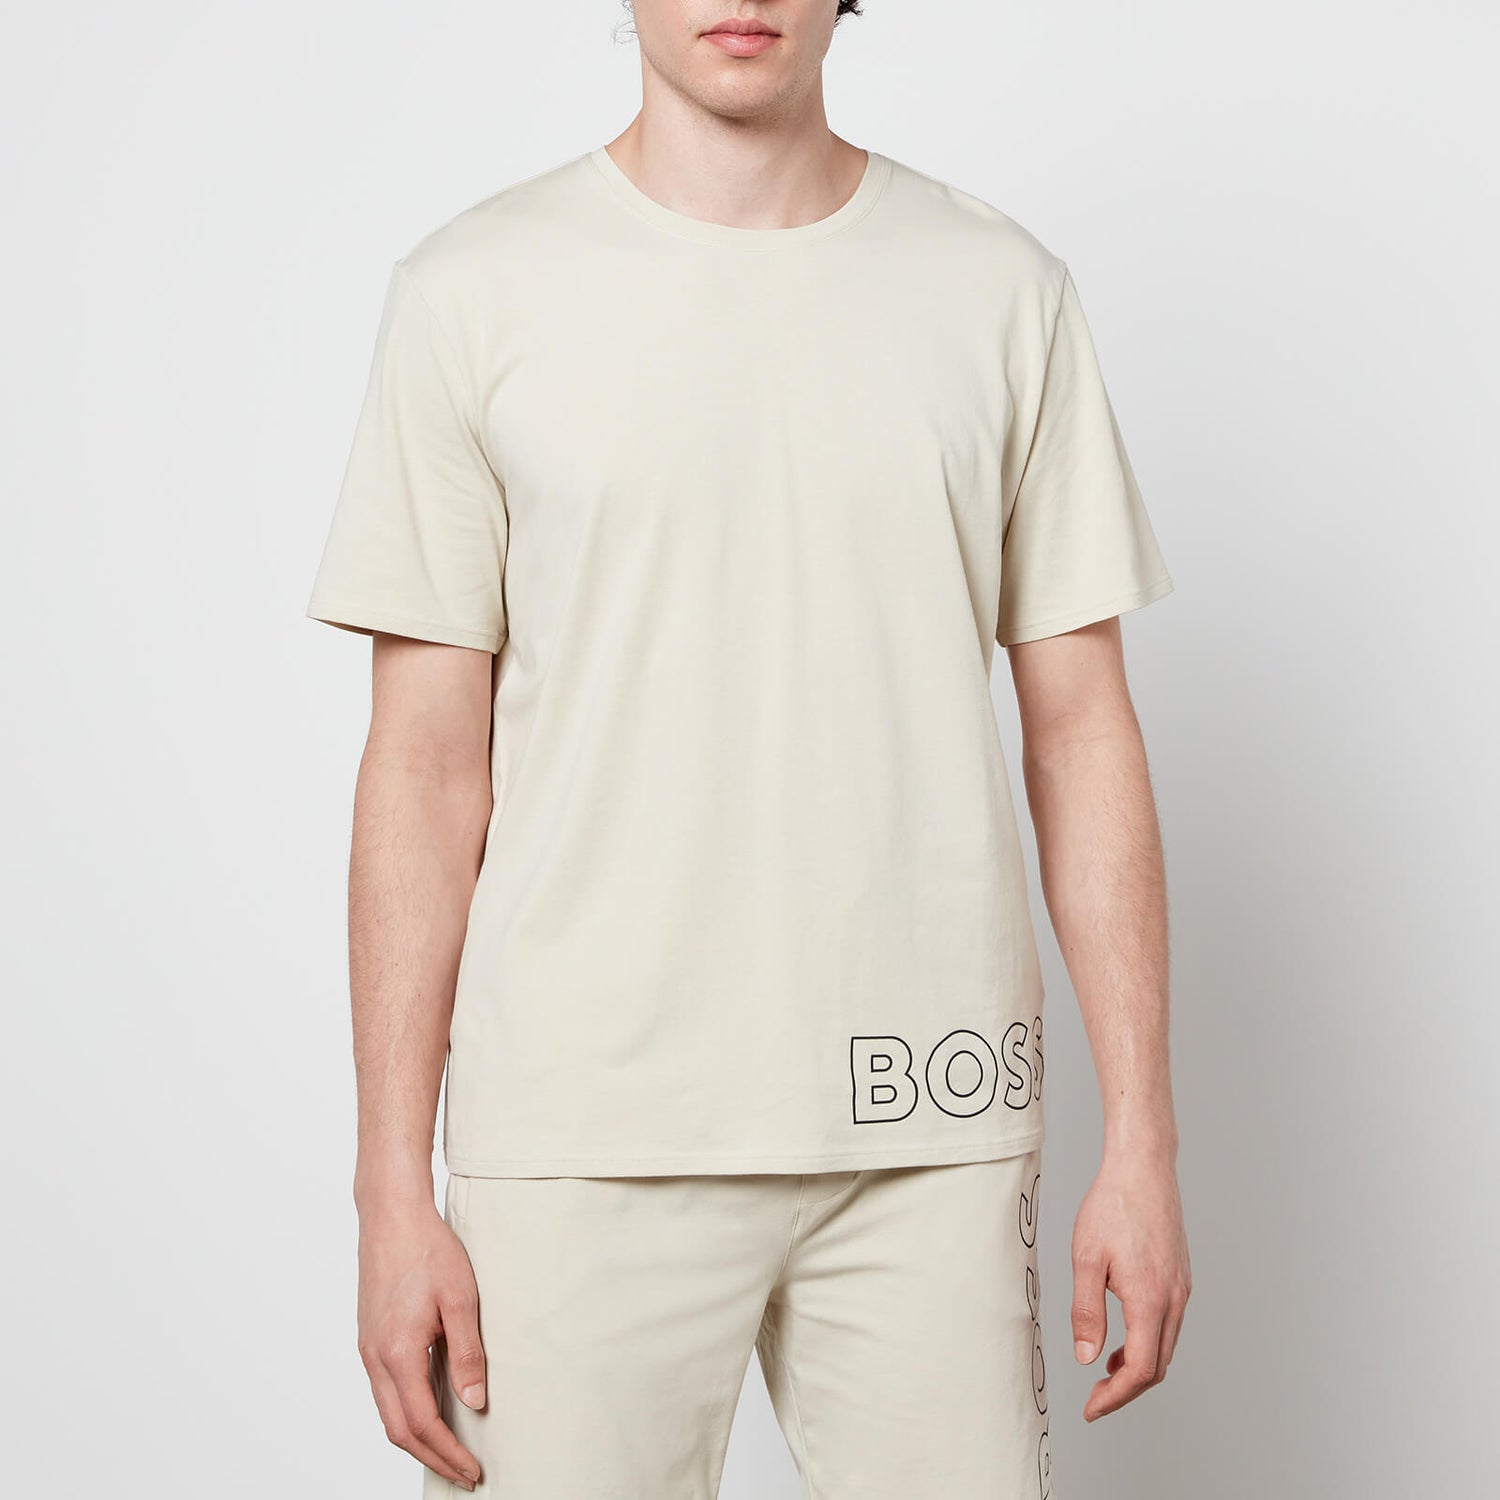 BOSS Bodywear Men's Identity T-Shirt - Light Beige - S